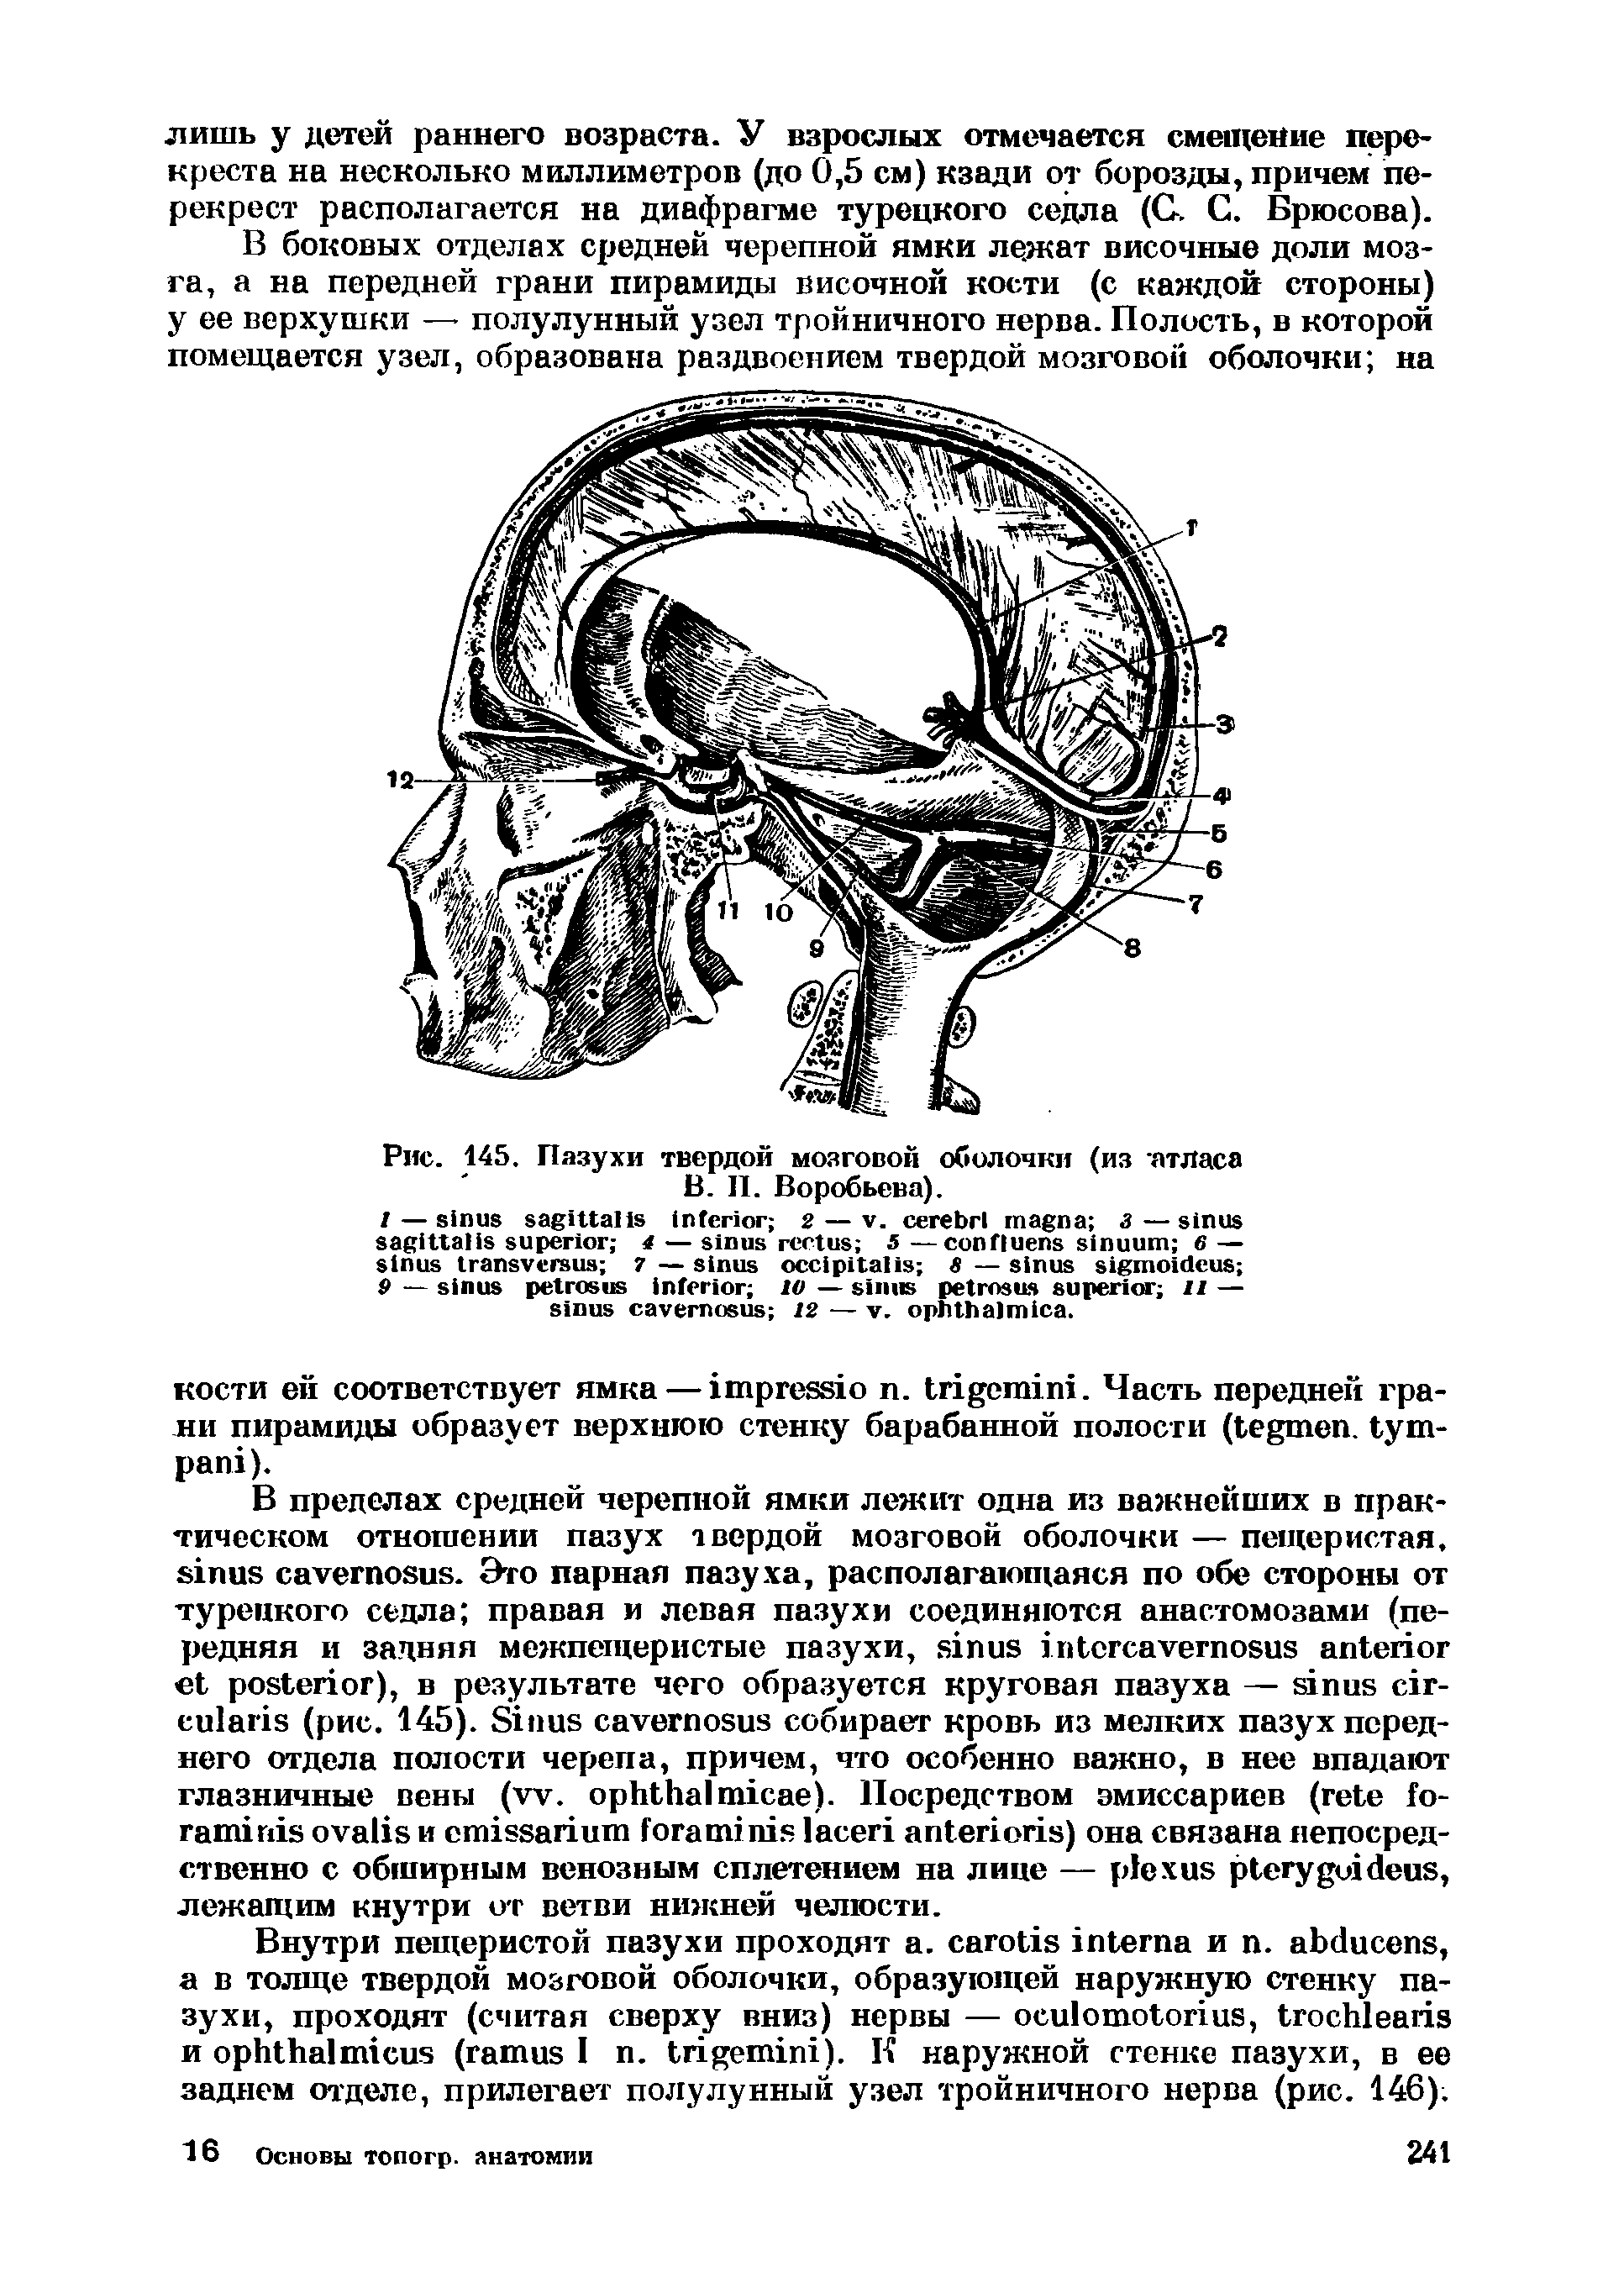 Рис. 145. Пазухи твердой мозговой оболочки (из атласа В. II. Воробьева).